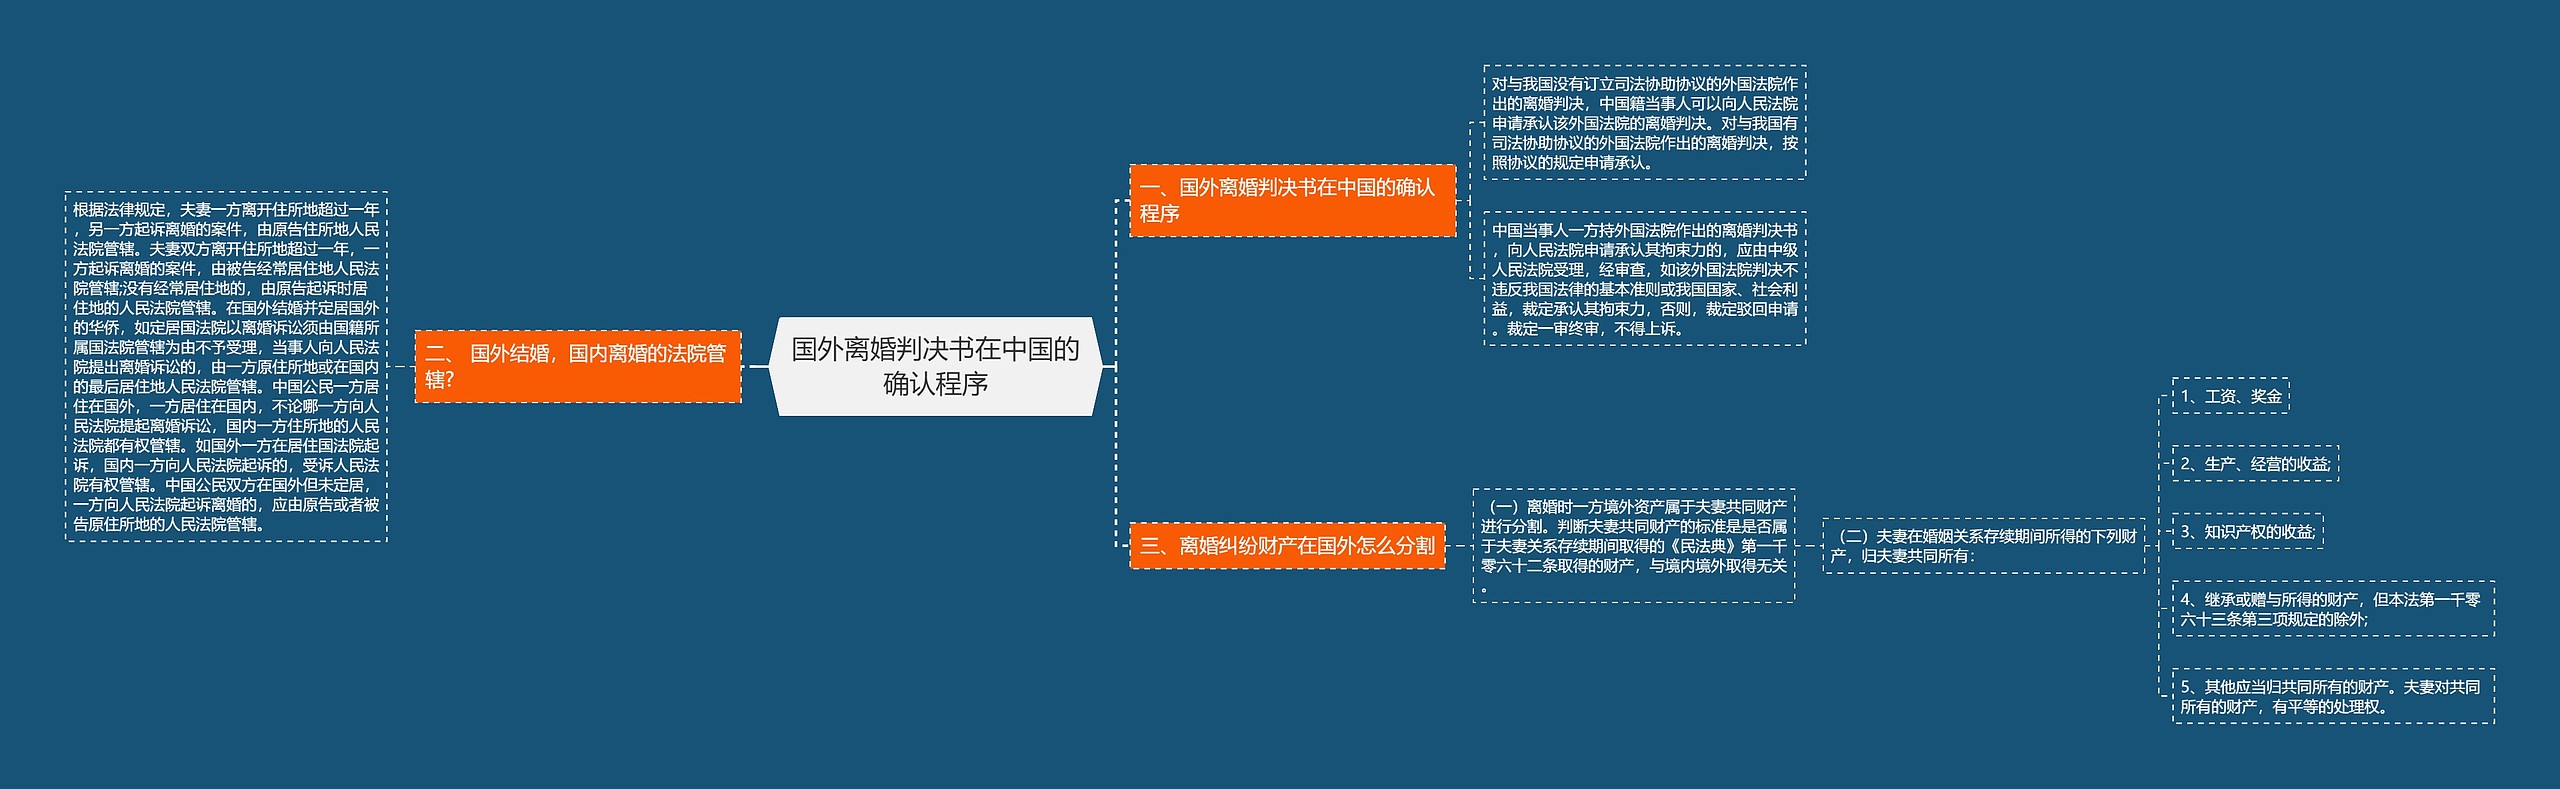 国外离婚判决书在中国的确认程序思维导图